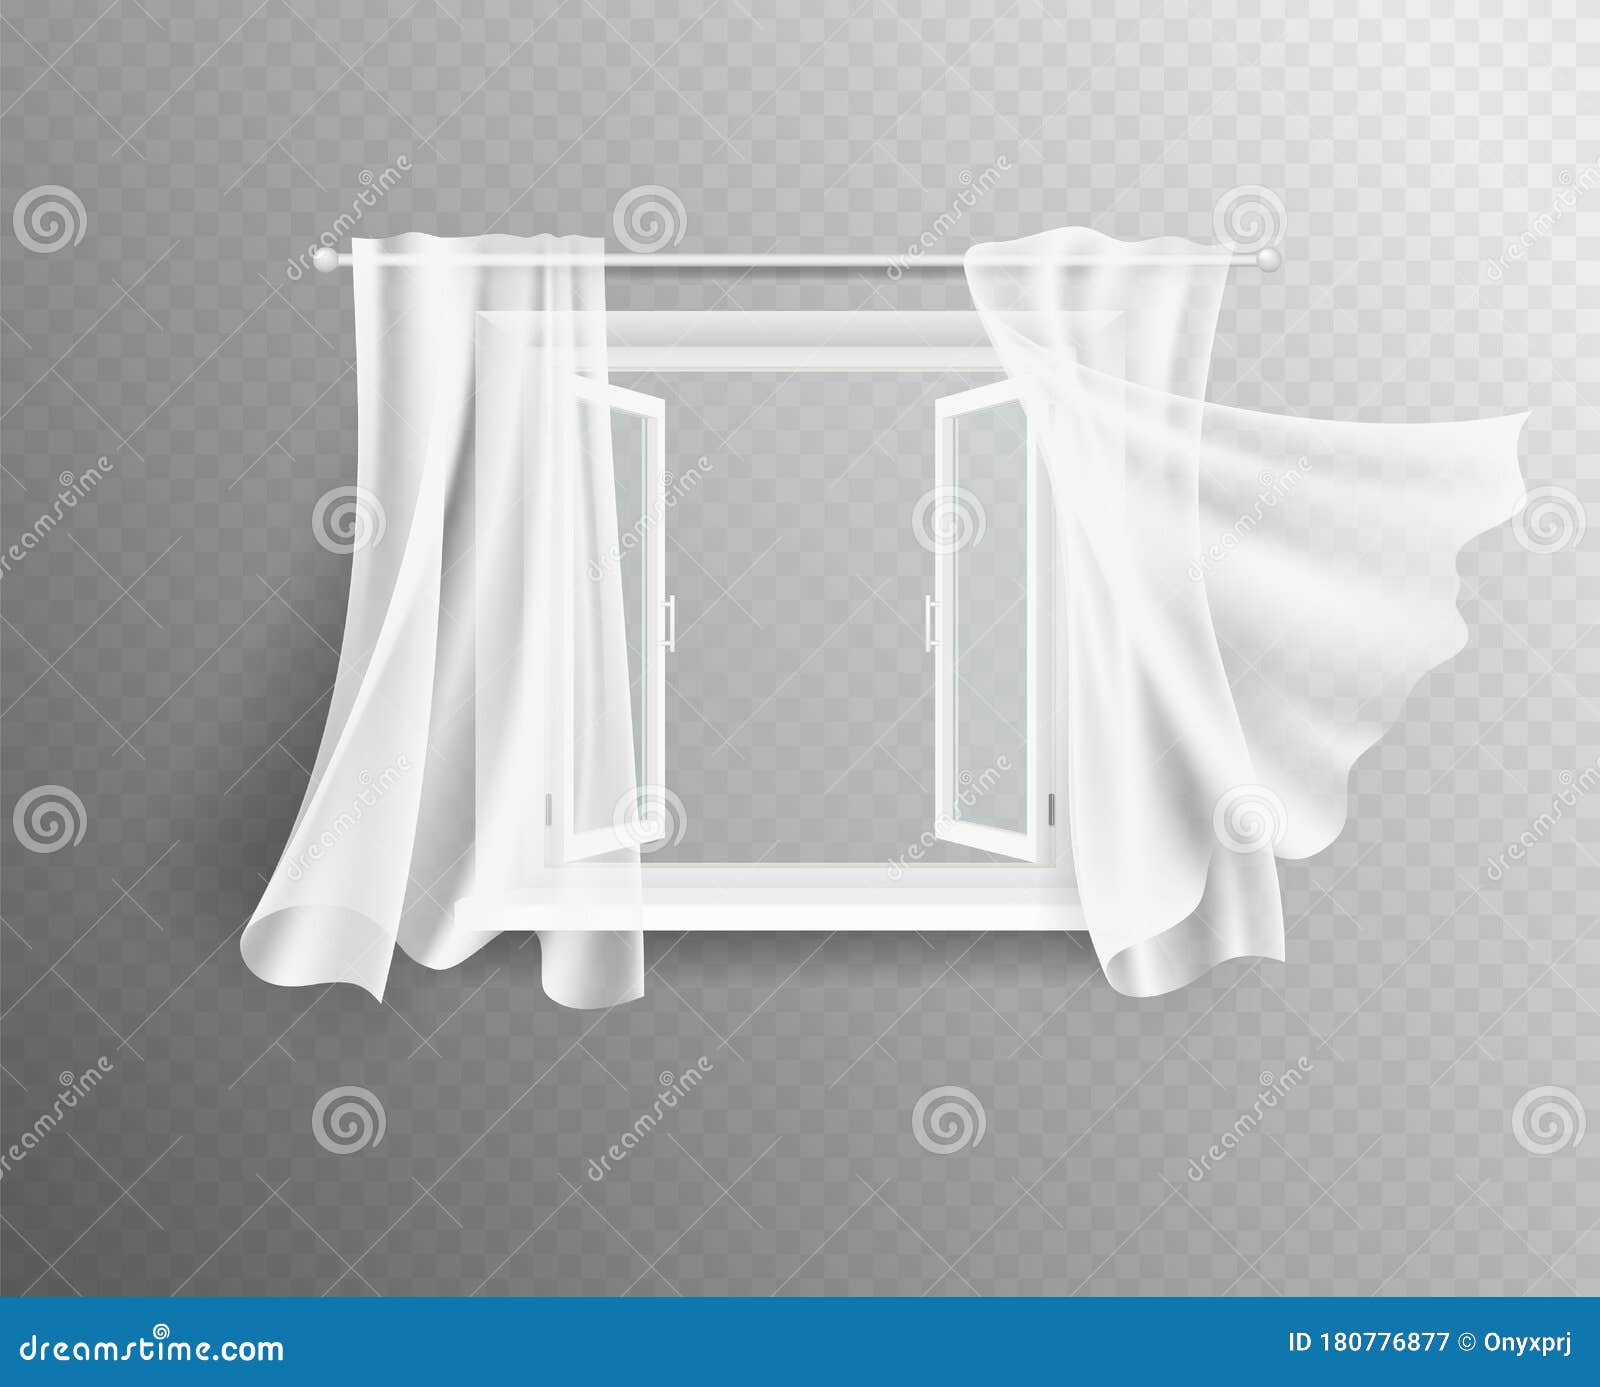 Cortinas blancas de las ventanas, tela: vector de stock (libre de